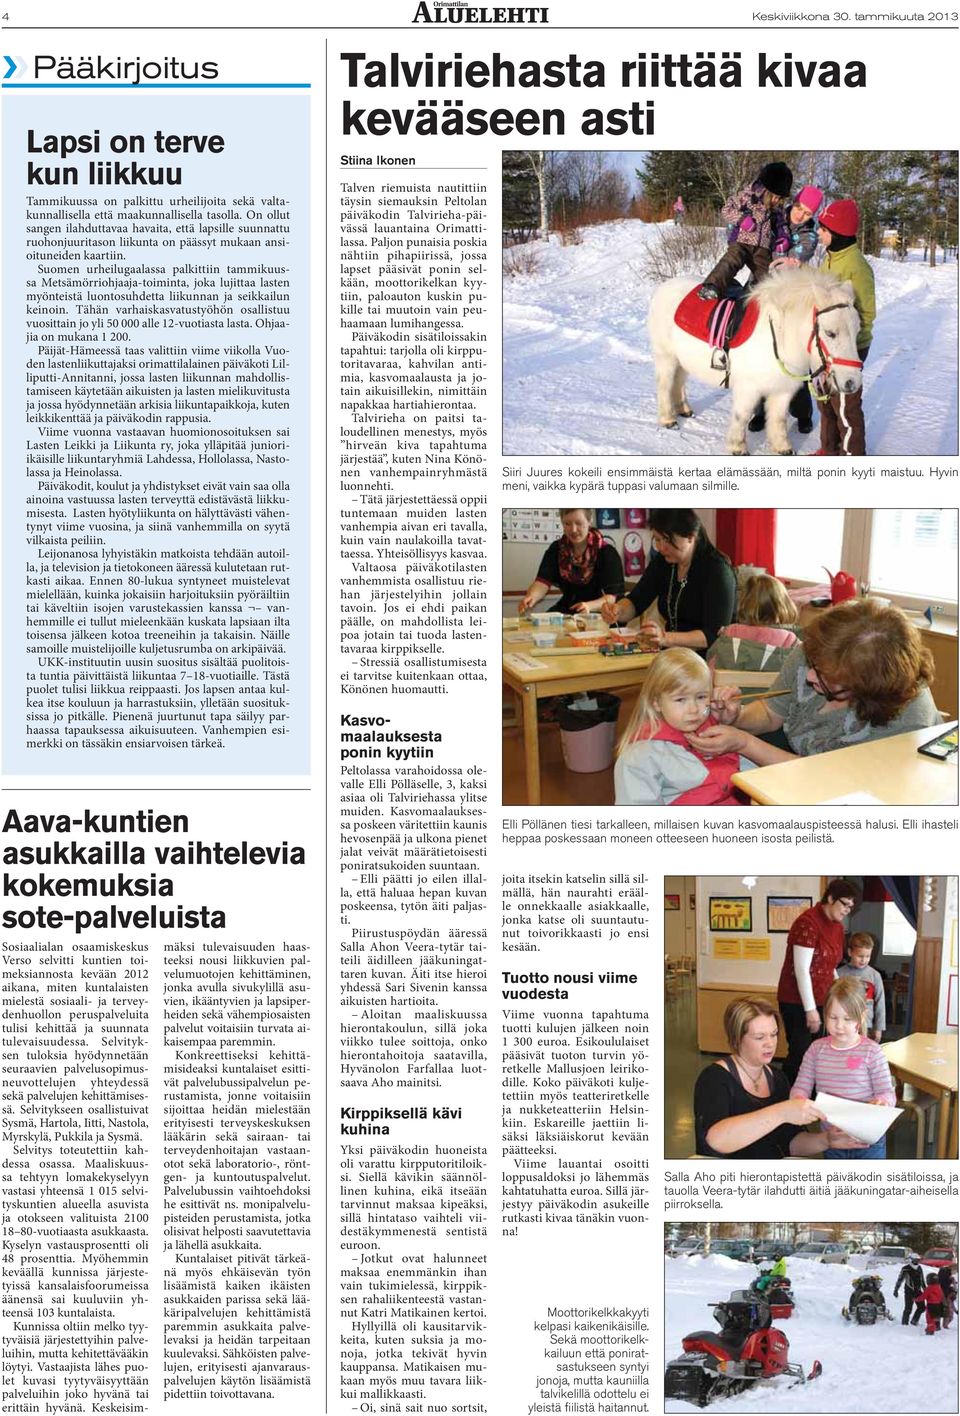 Suomen urheilugaalassa palkittiin tammikuussa Metsämörriohjaaja-toiminta, joka lujittaa lasten myönteistä luontosuhdetta liikunnan ja seikkailun keinoin.